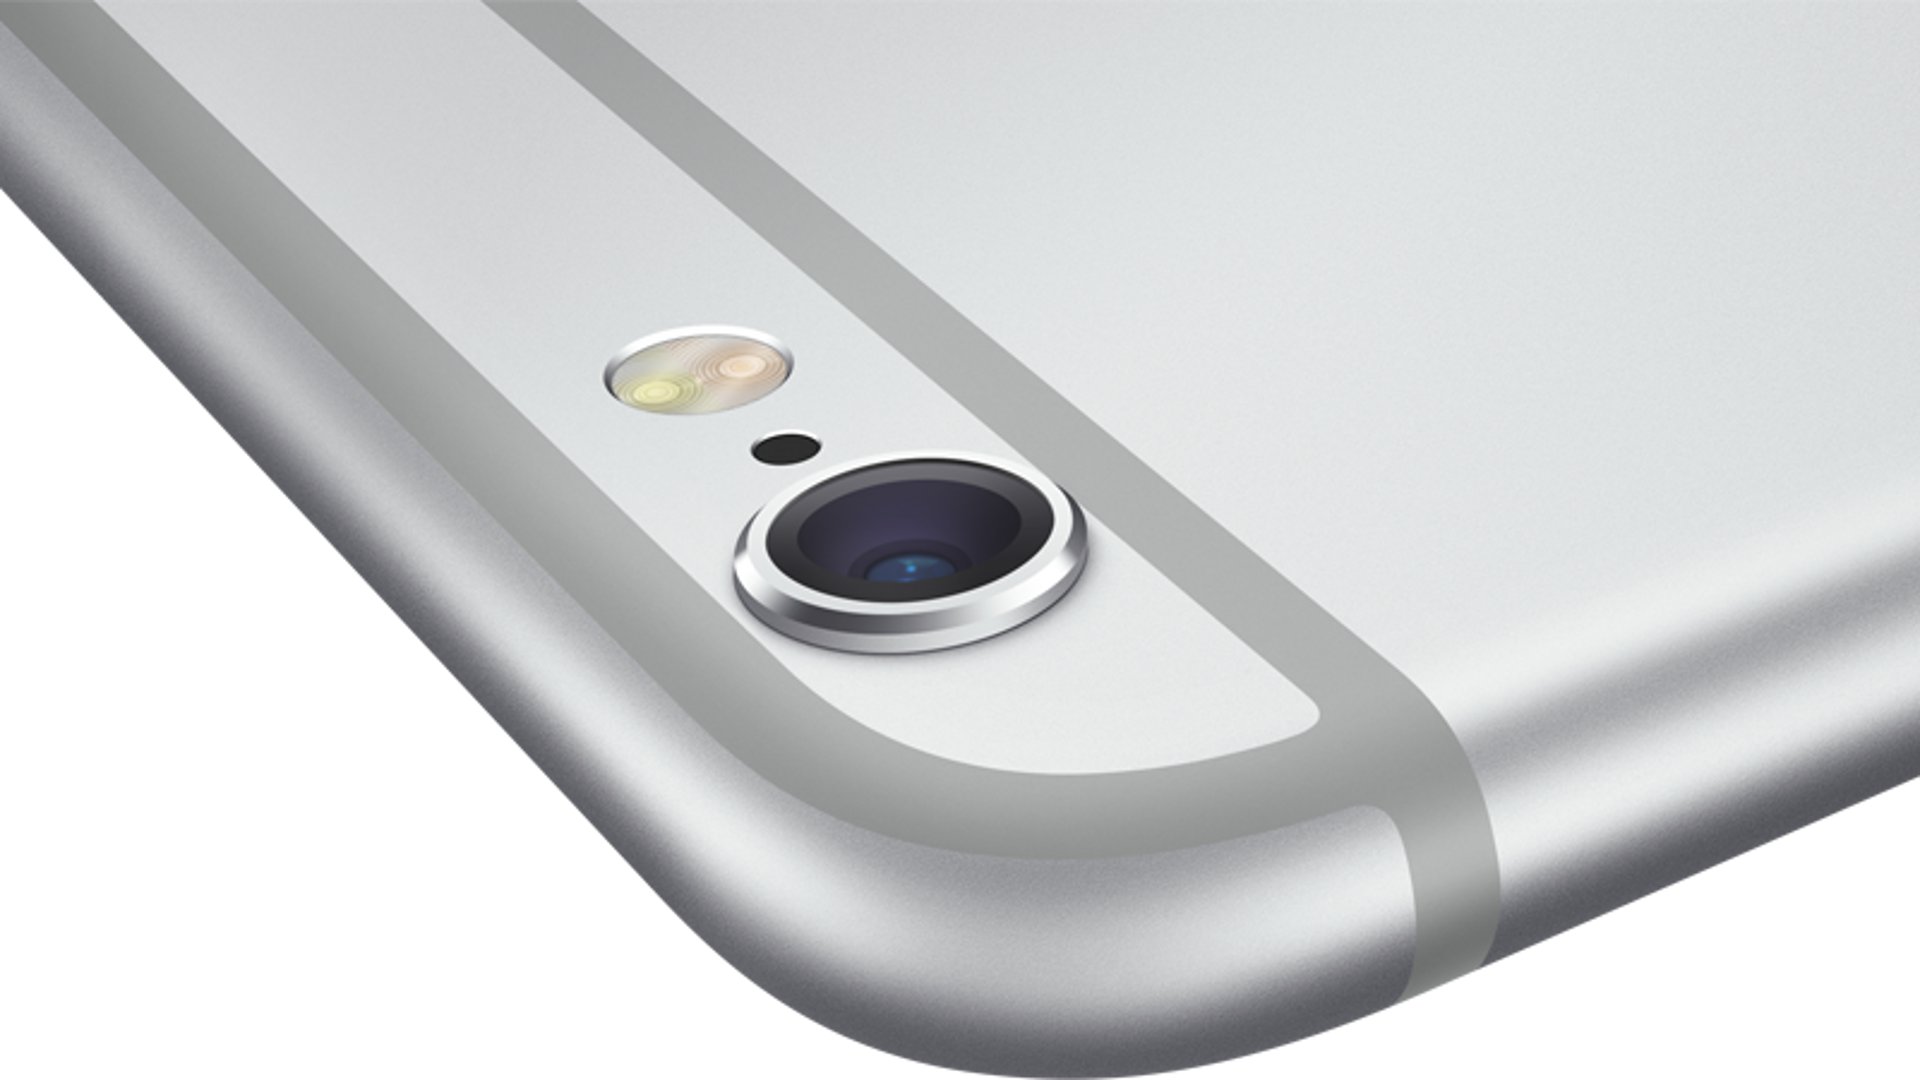 iPhone 6 Plus - iSight Camera